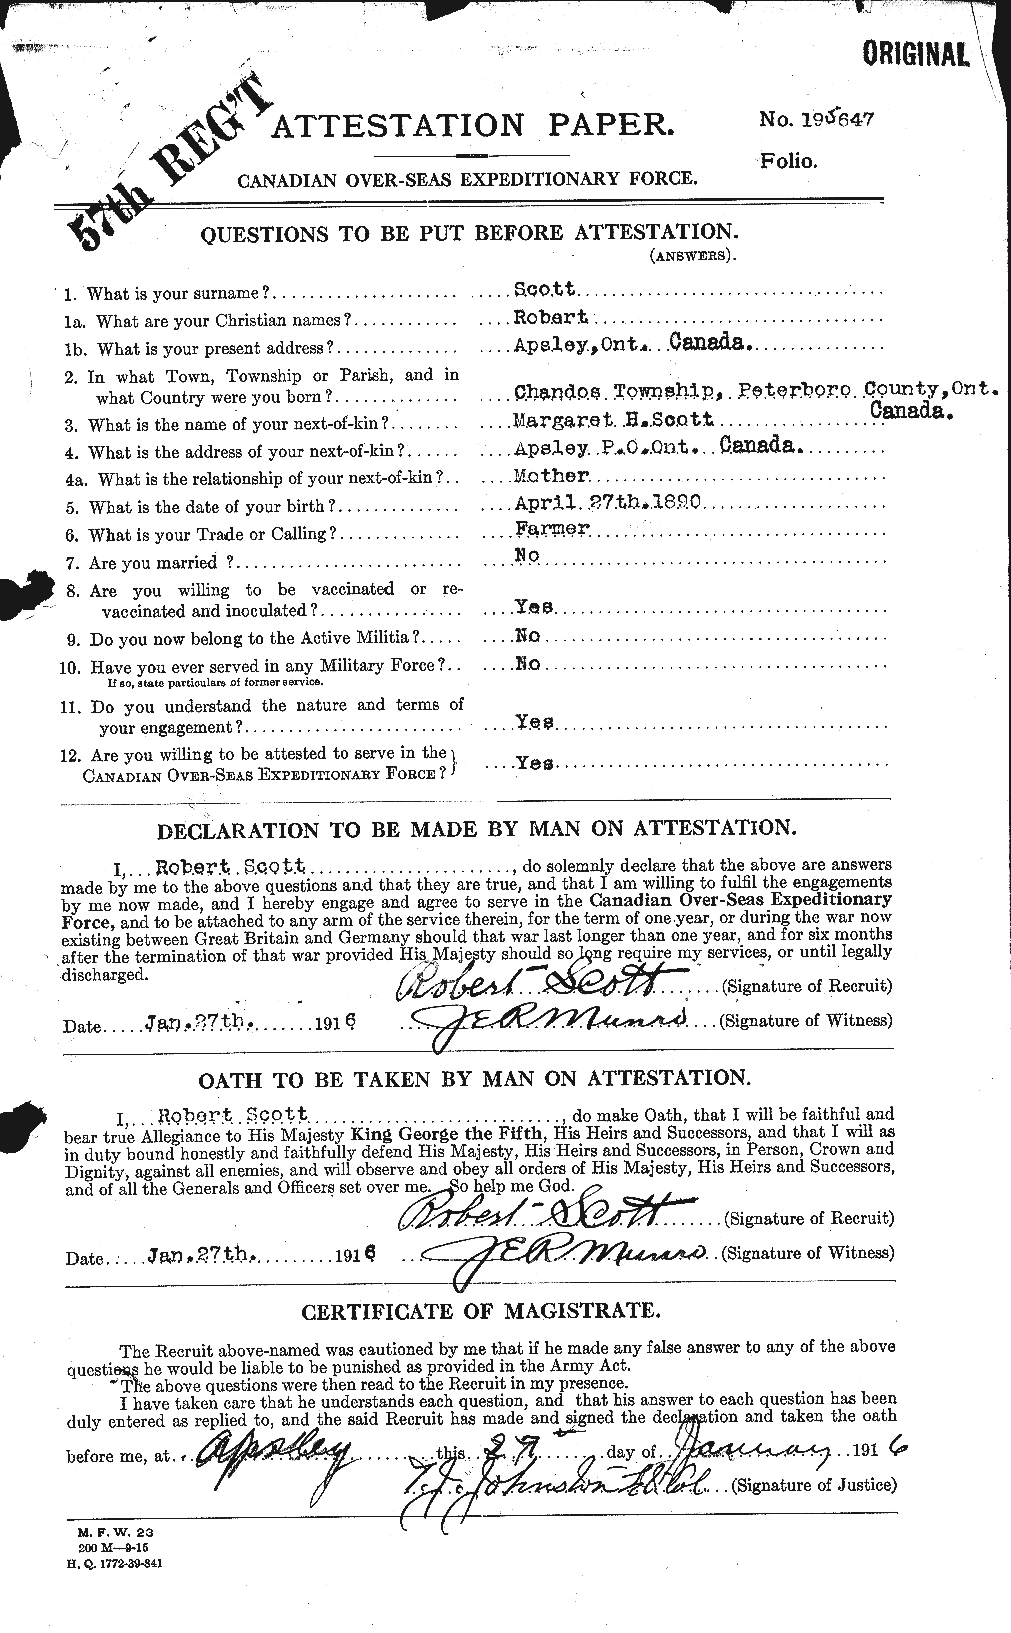 Dossiers du Personnel de la Première Guerre mondiale - CEC 089250a